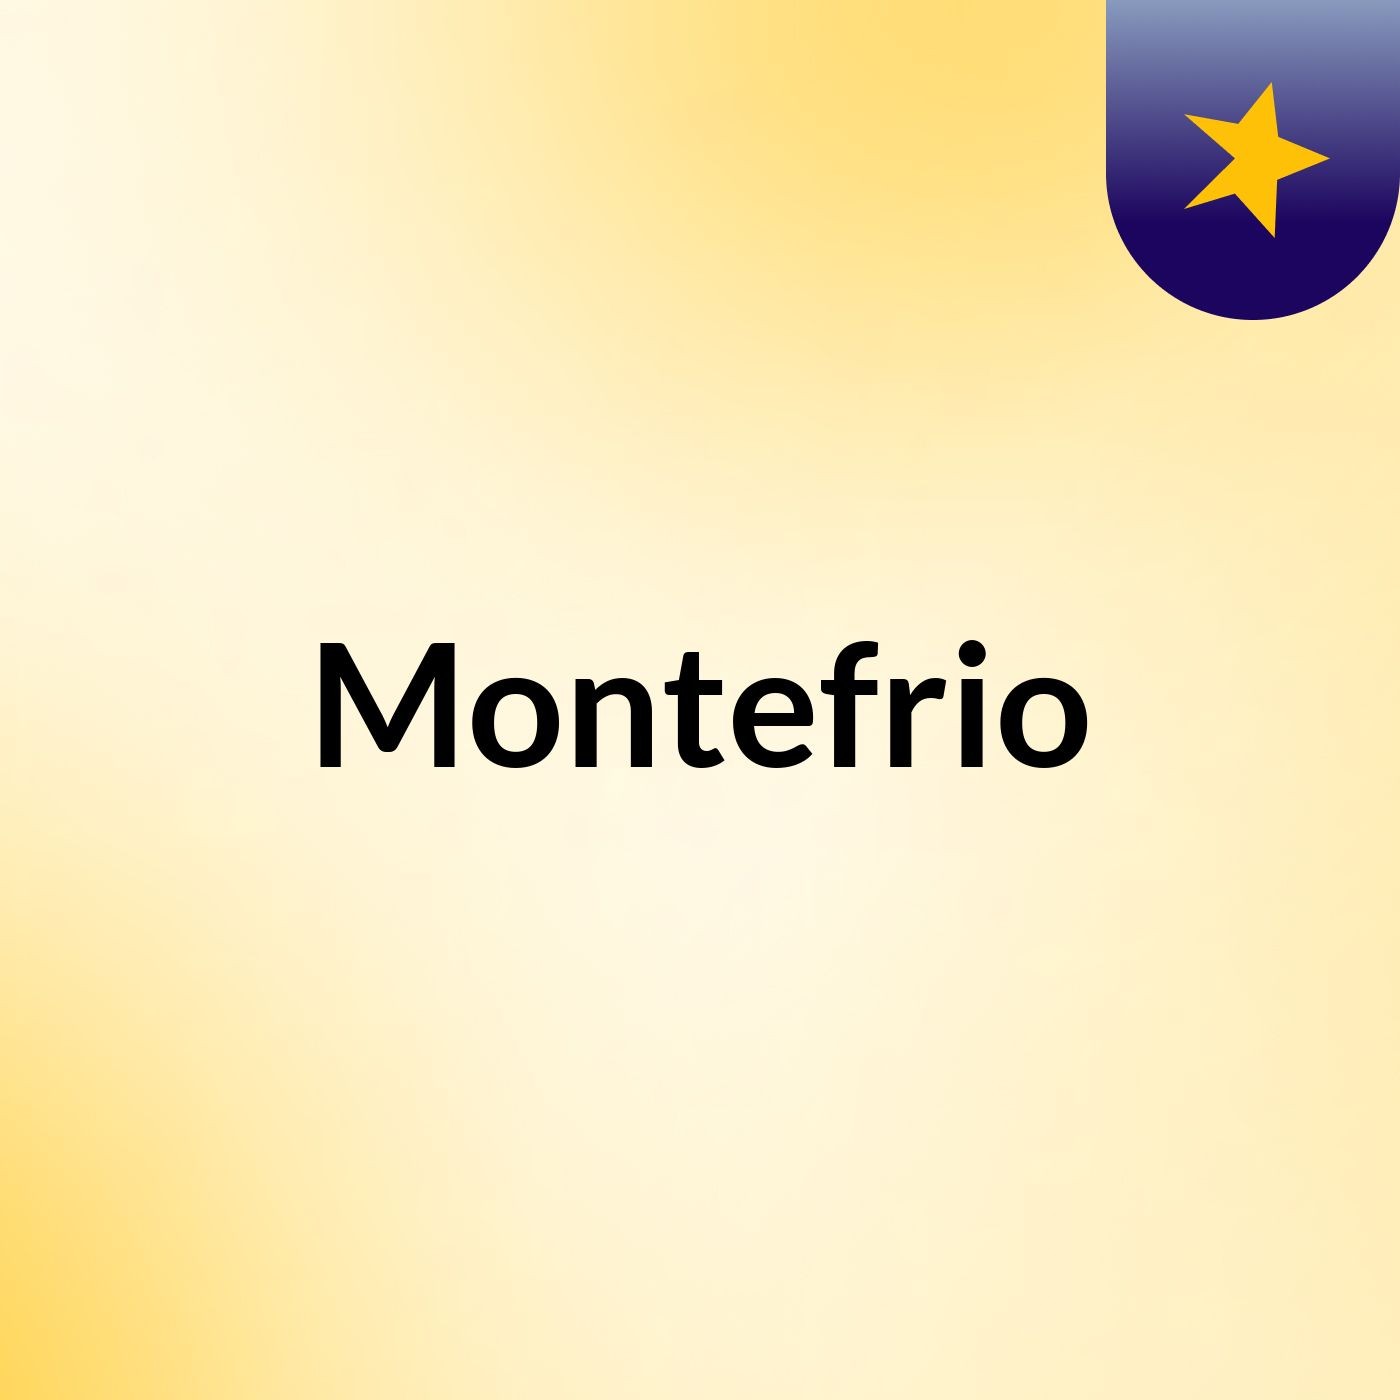 Montefrio Castle